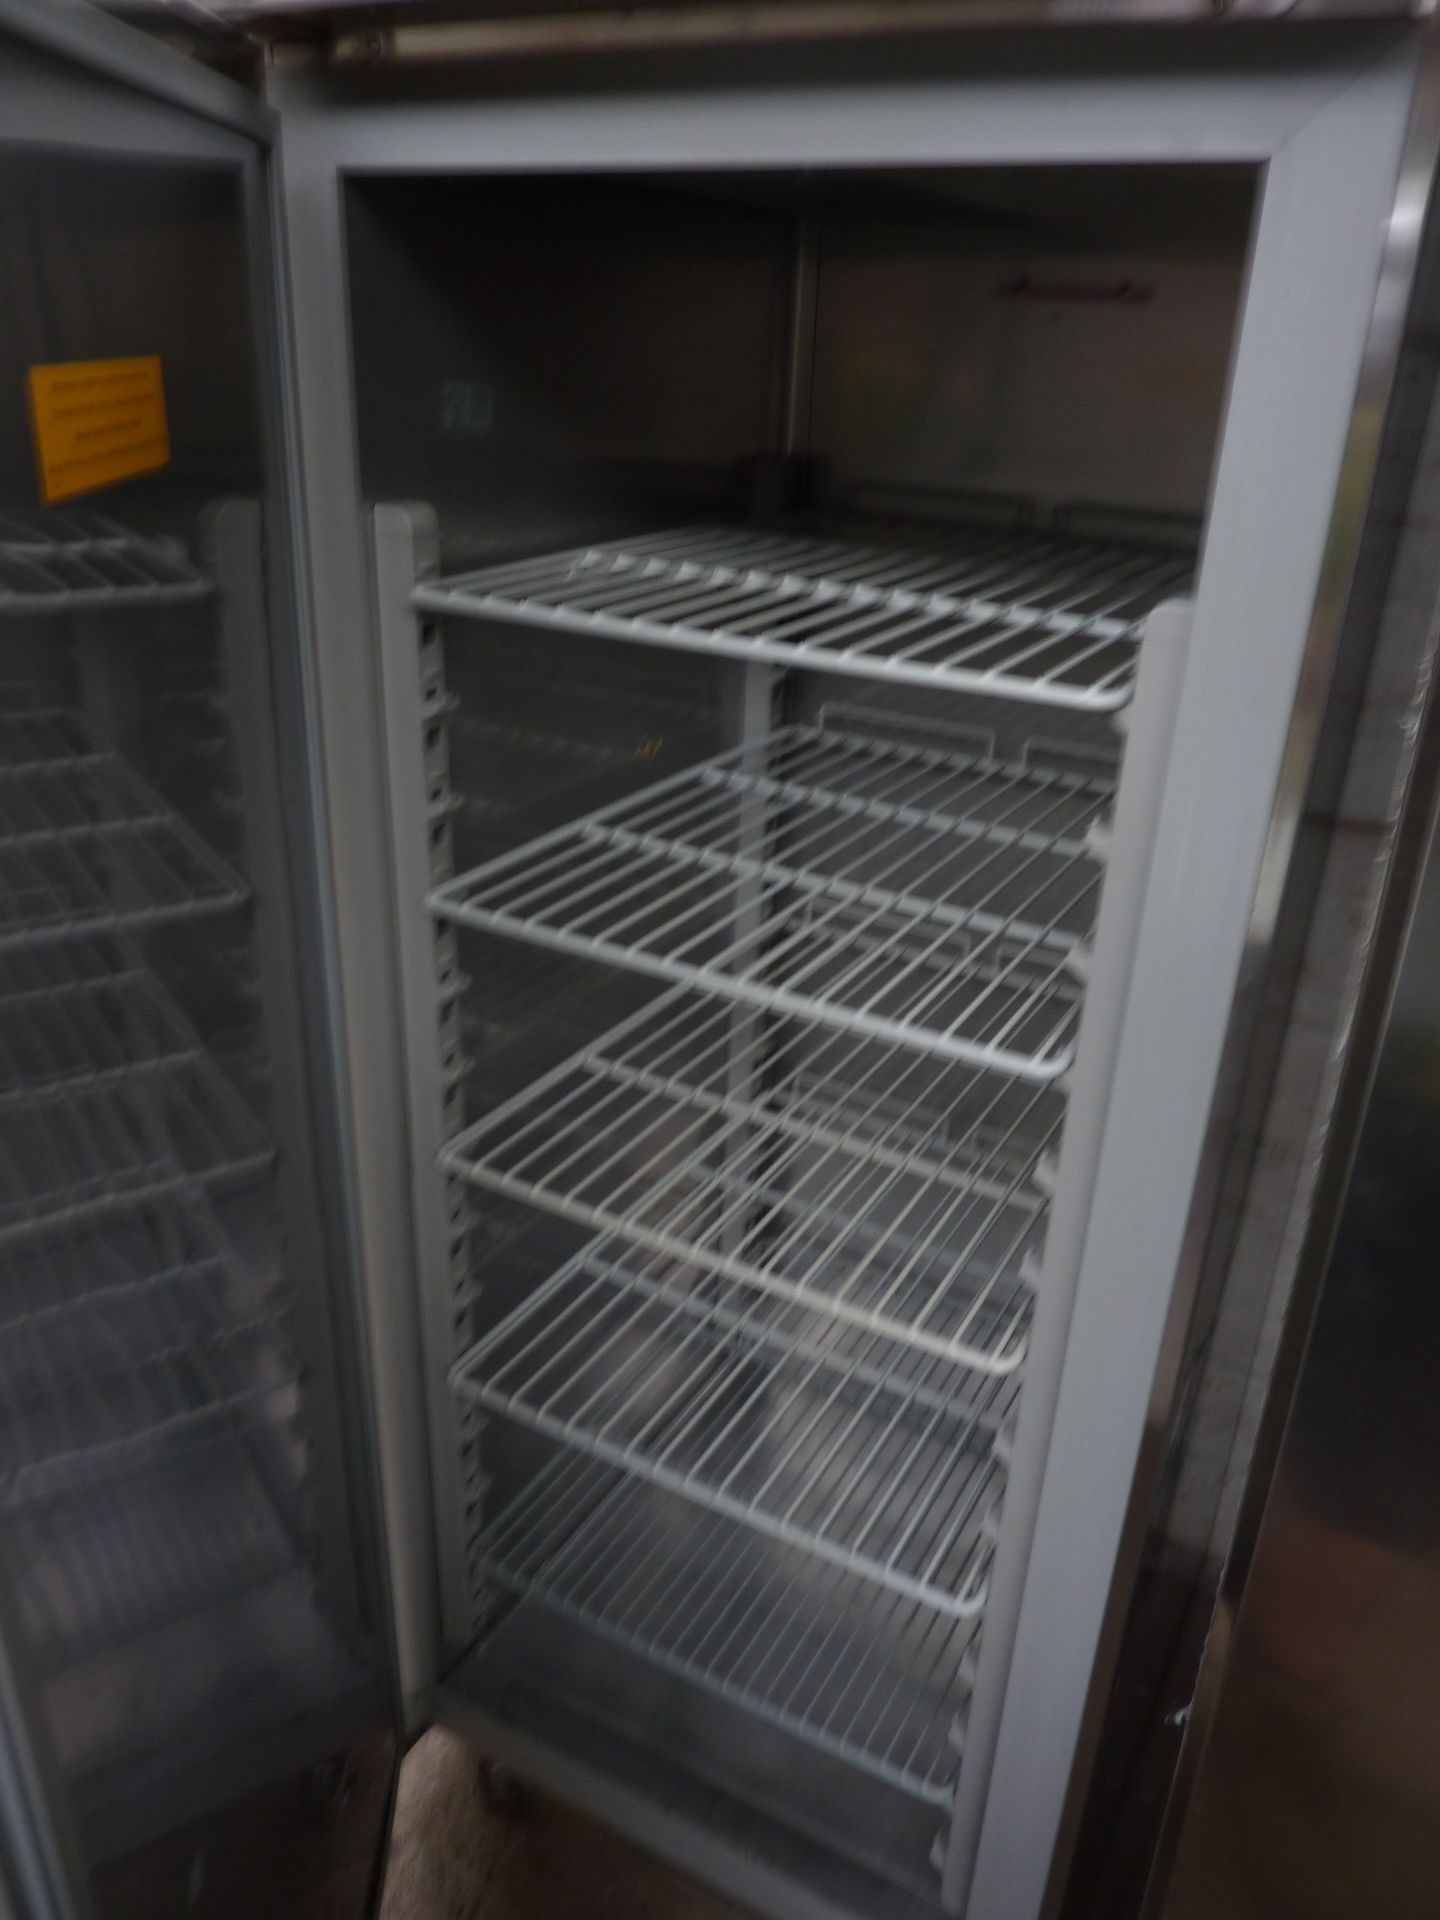 Ilsa upright fridge - Image 2 of 2